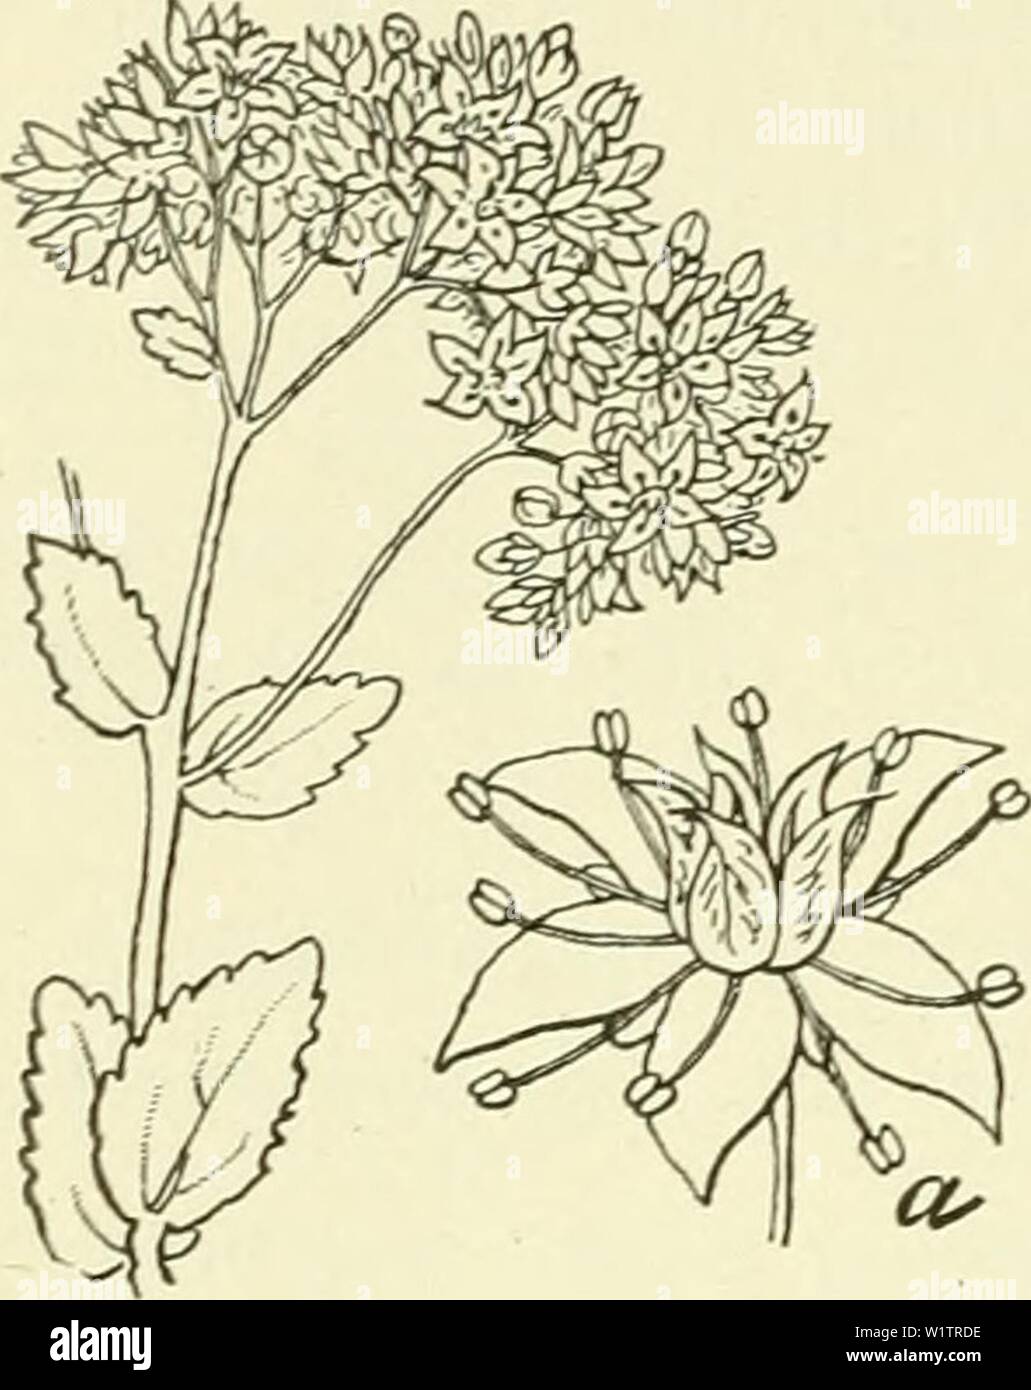 Archive image from page 503 of De flora van Nederland (1909-11). De flora van Nederland  defloravannederl02heuk Year: 1909-11. 472 CRASSULACEAE. FAMILIE 69.    Sedum purpureum Fig. 572. a bloem. S. purpureum O Lk. (S. Teléphium-) L., S. purpurascens-) Koch.). H e- m e 1 s 1 e u t e 1 (fig. 572). Deze onbehaarde, krachtige plant, heeft knolvormig verdikte wortels, waaruit vele, meest onvertakte, rechtopstaande, vaak rood aangeloopen sten- gels voortkomen. De bladen zijn vleezig, vlak, langwerpig tot lancetvormig, de onderste zijn kortgesteeld, meest tegenoverstaand of in kran- sen van 3, stomp, Stock Photo